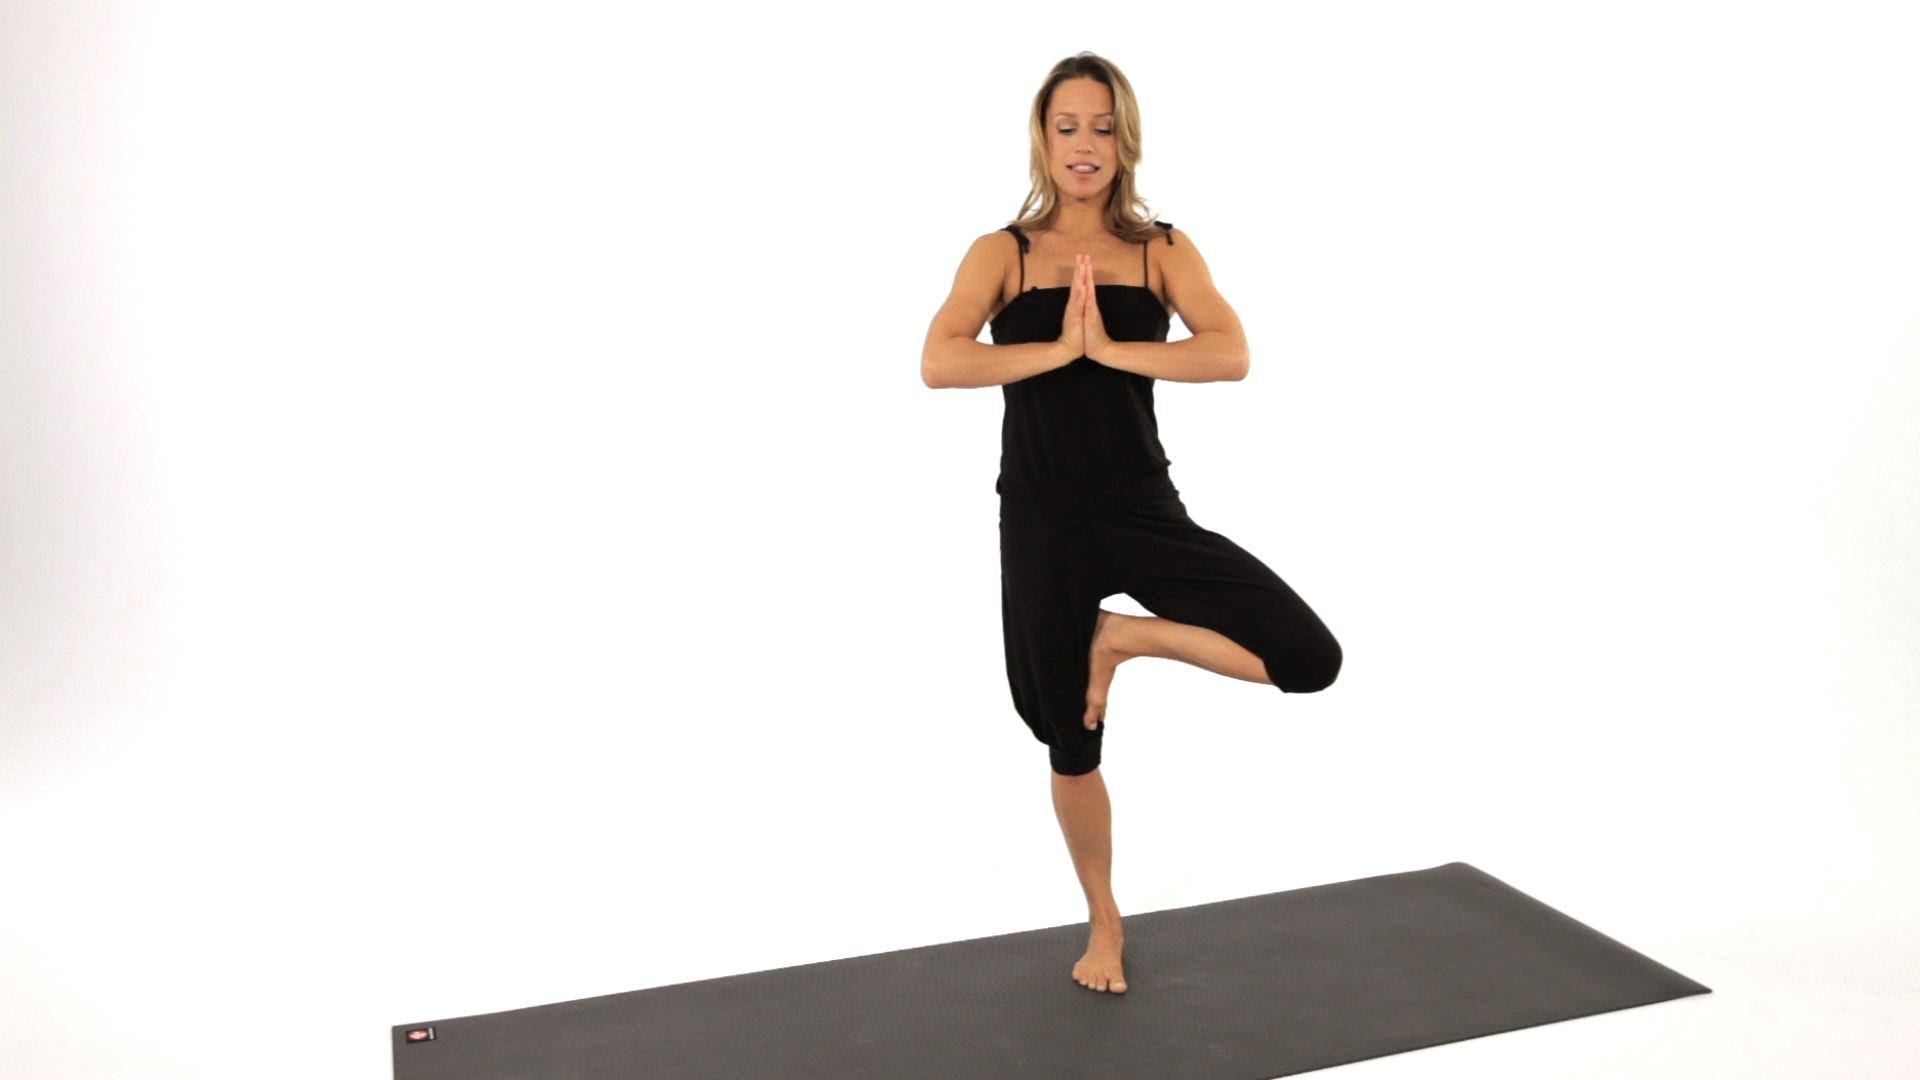 How to Do a Tree Pose (Vrksasana) | Yoga - YouTube